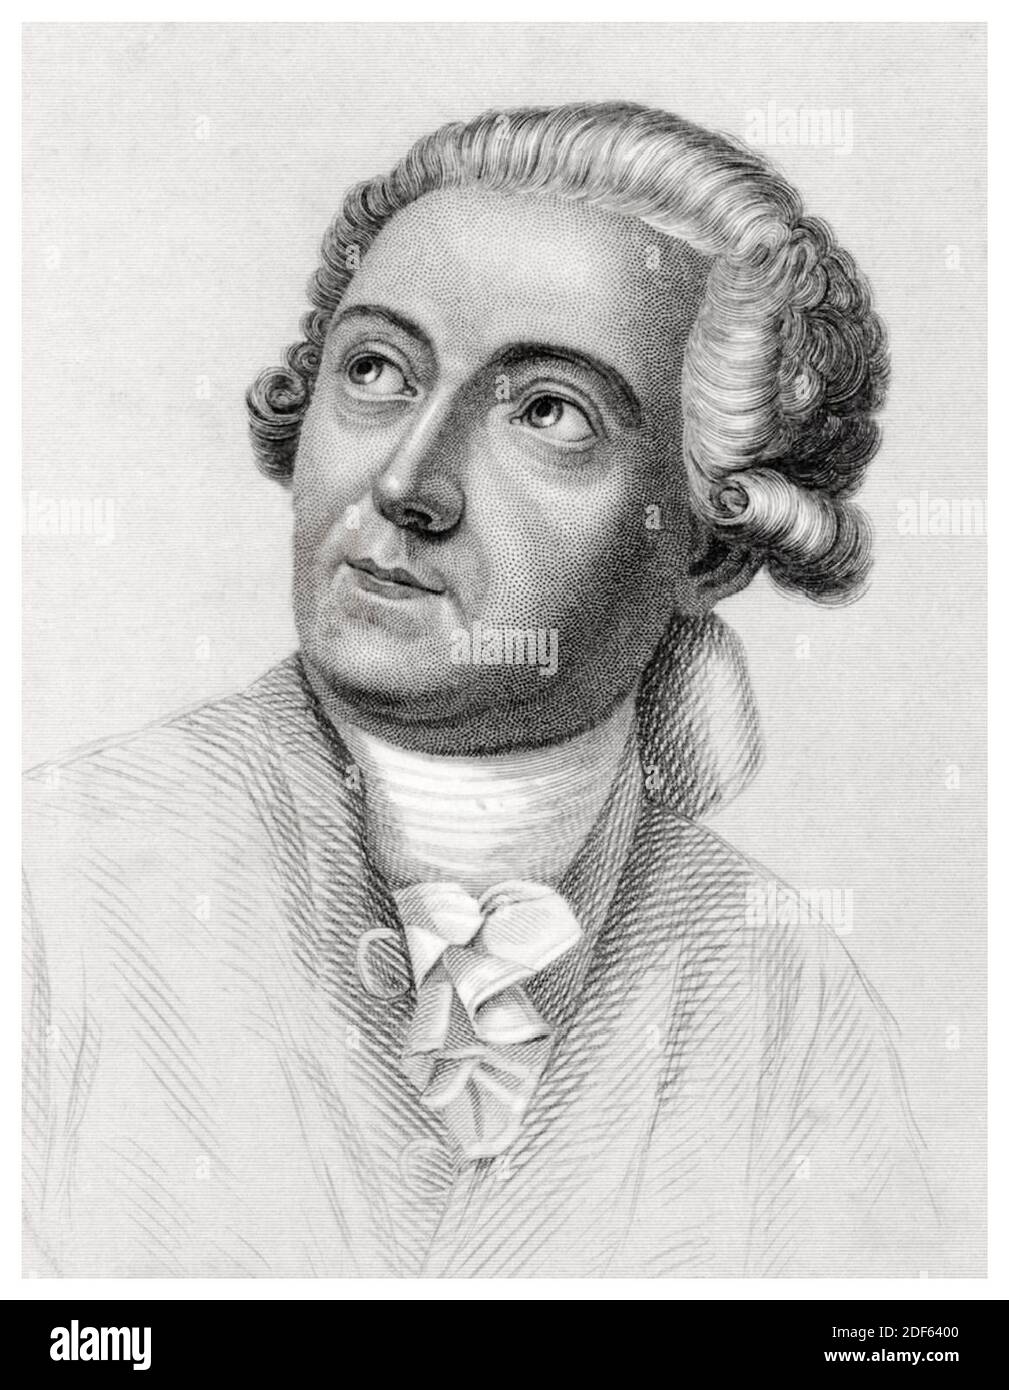 Antoine Lavoisier (1743-1794), noble et chimiste français, gravure de portraits de William G Jackman d'après Jacques Louis David, avant 1860 Banque D'Images